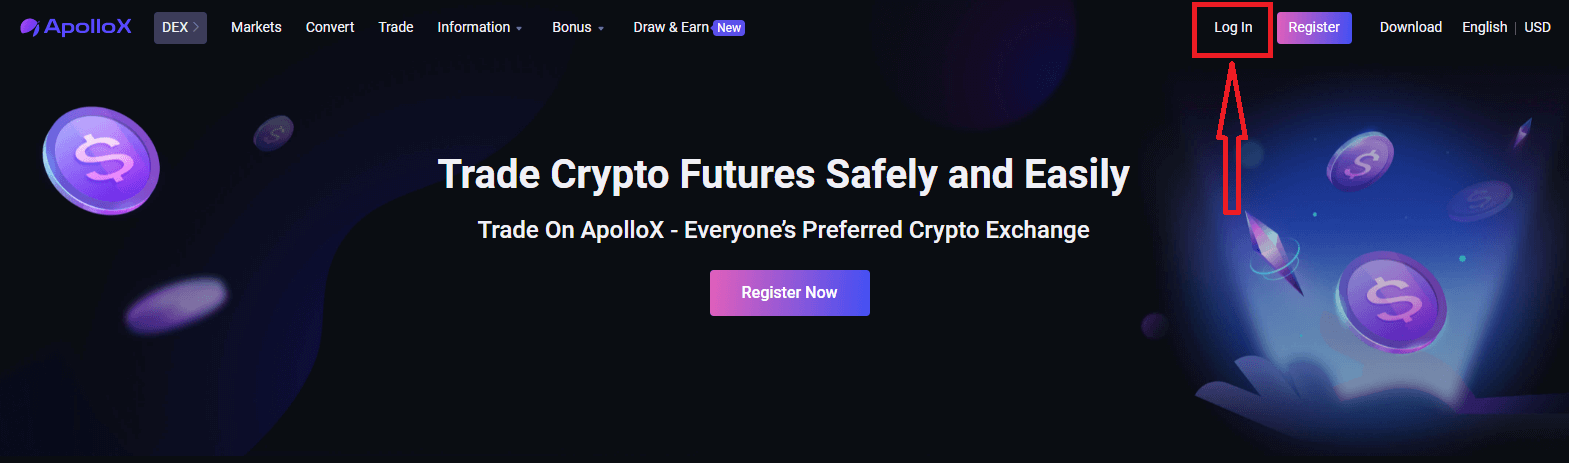 Comment se connecter et commencer à échanger des cryptos sur ApolloX